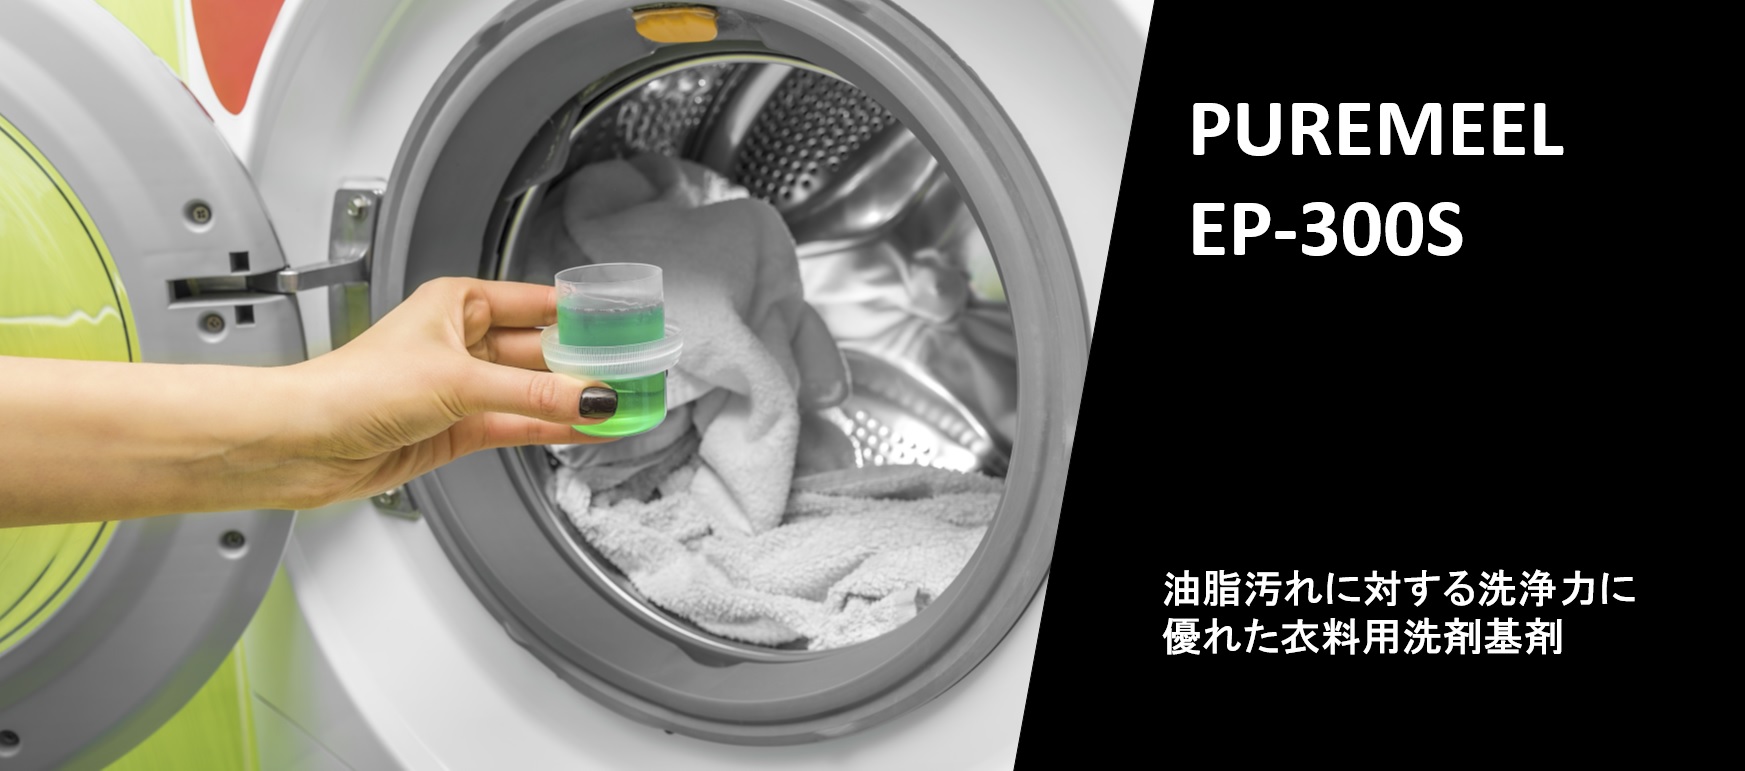 高洗浄力衣料用洗剤基剤『ピュアミール EP-300S』紹介ページを追加いたしました。